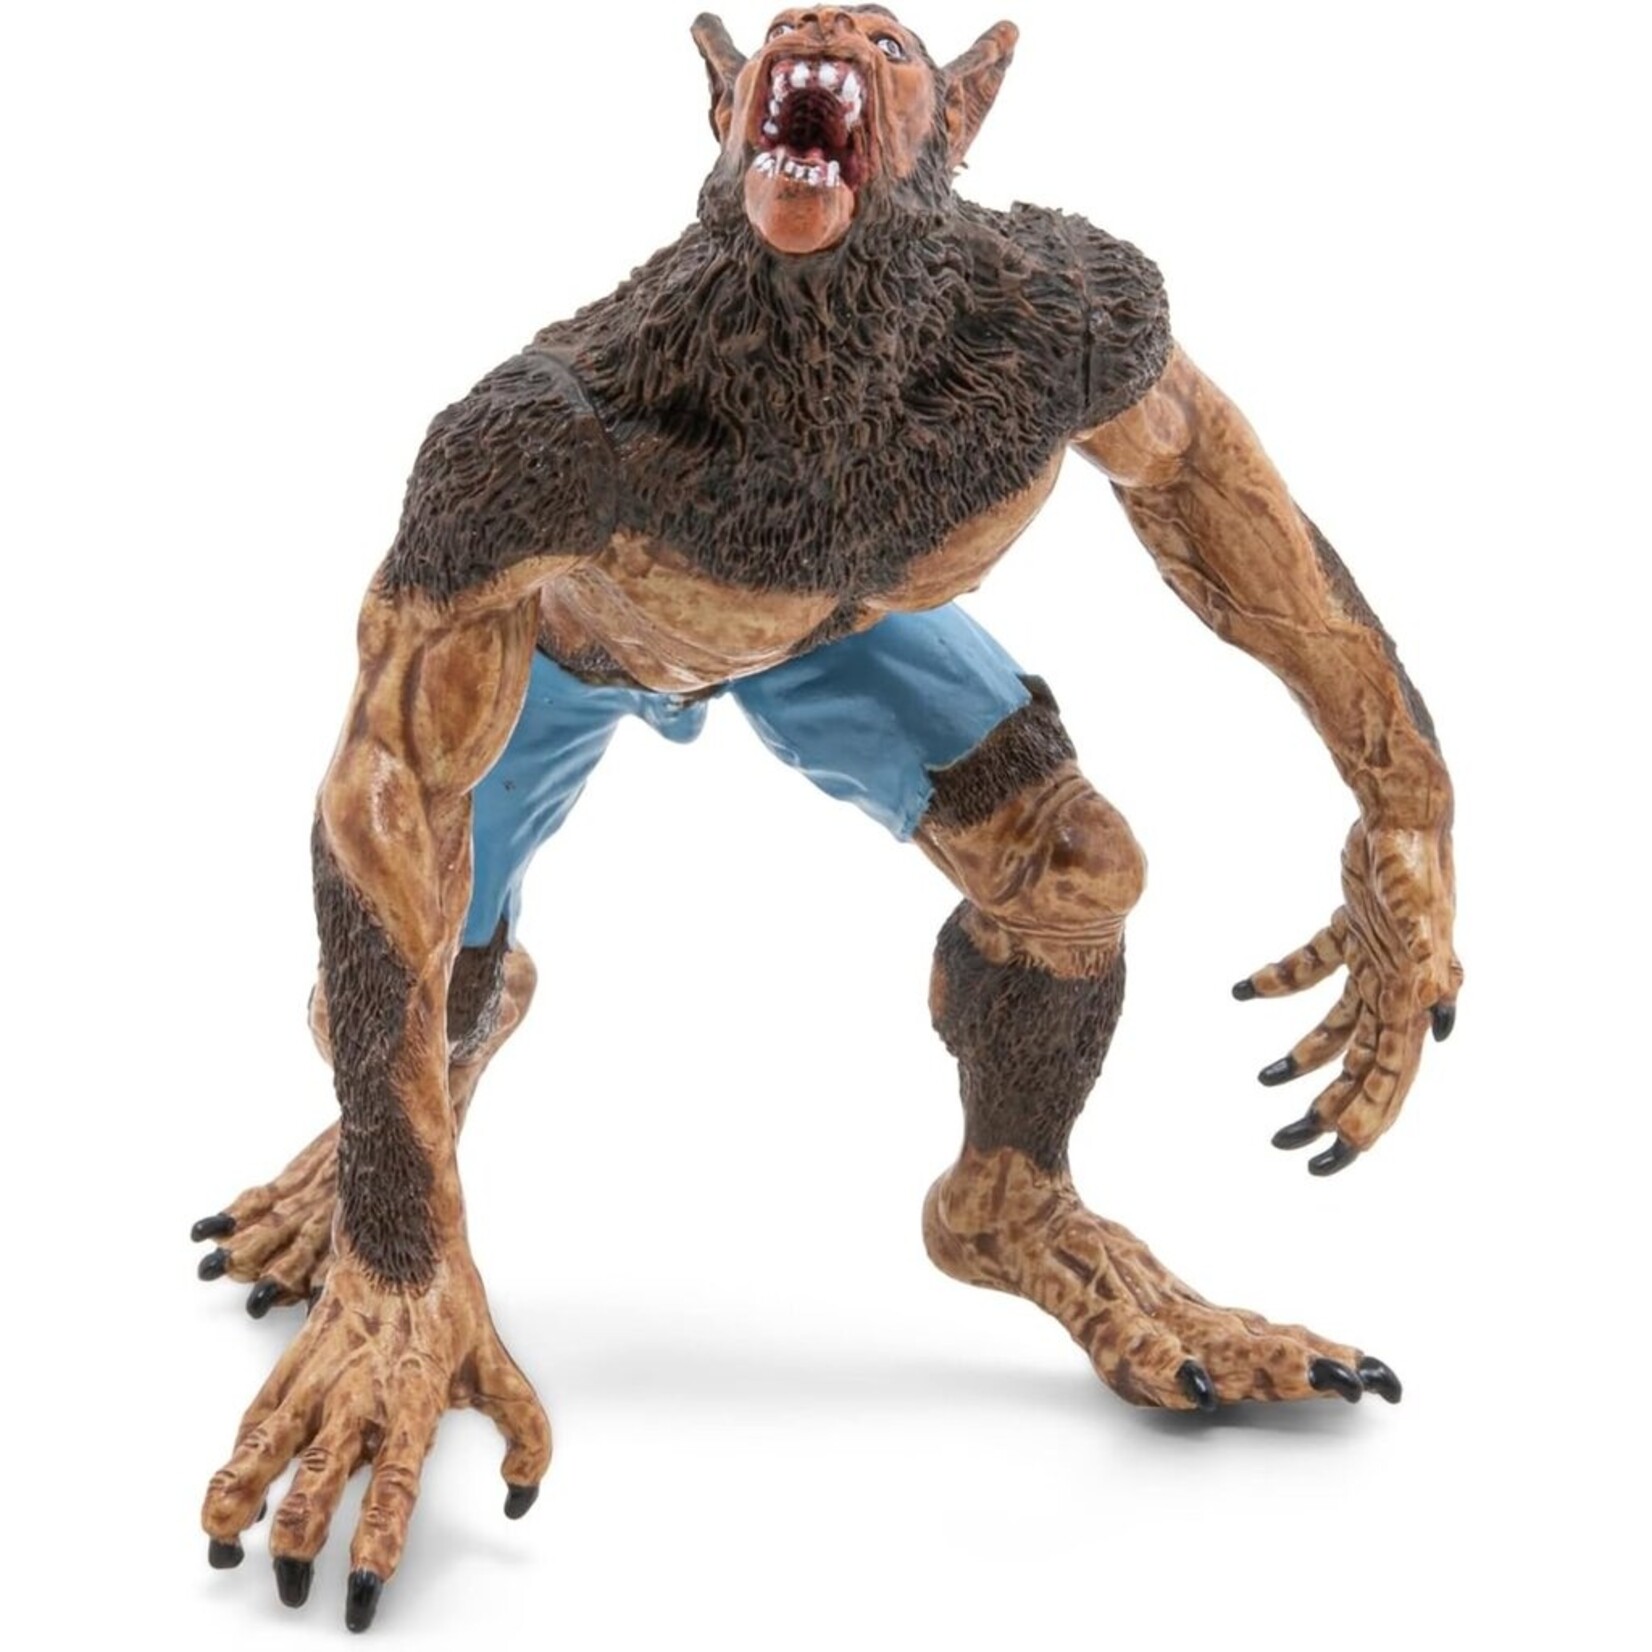 Werewolf Papo Figure